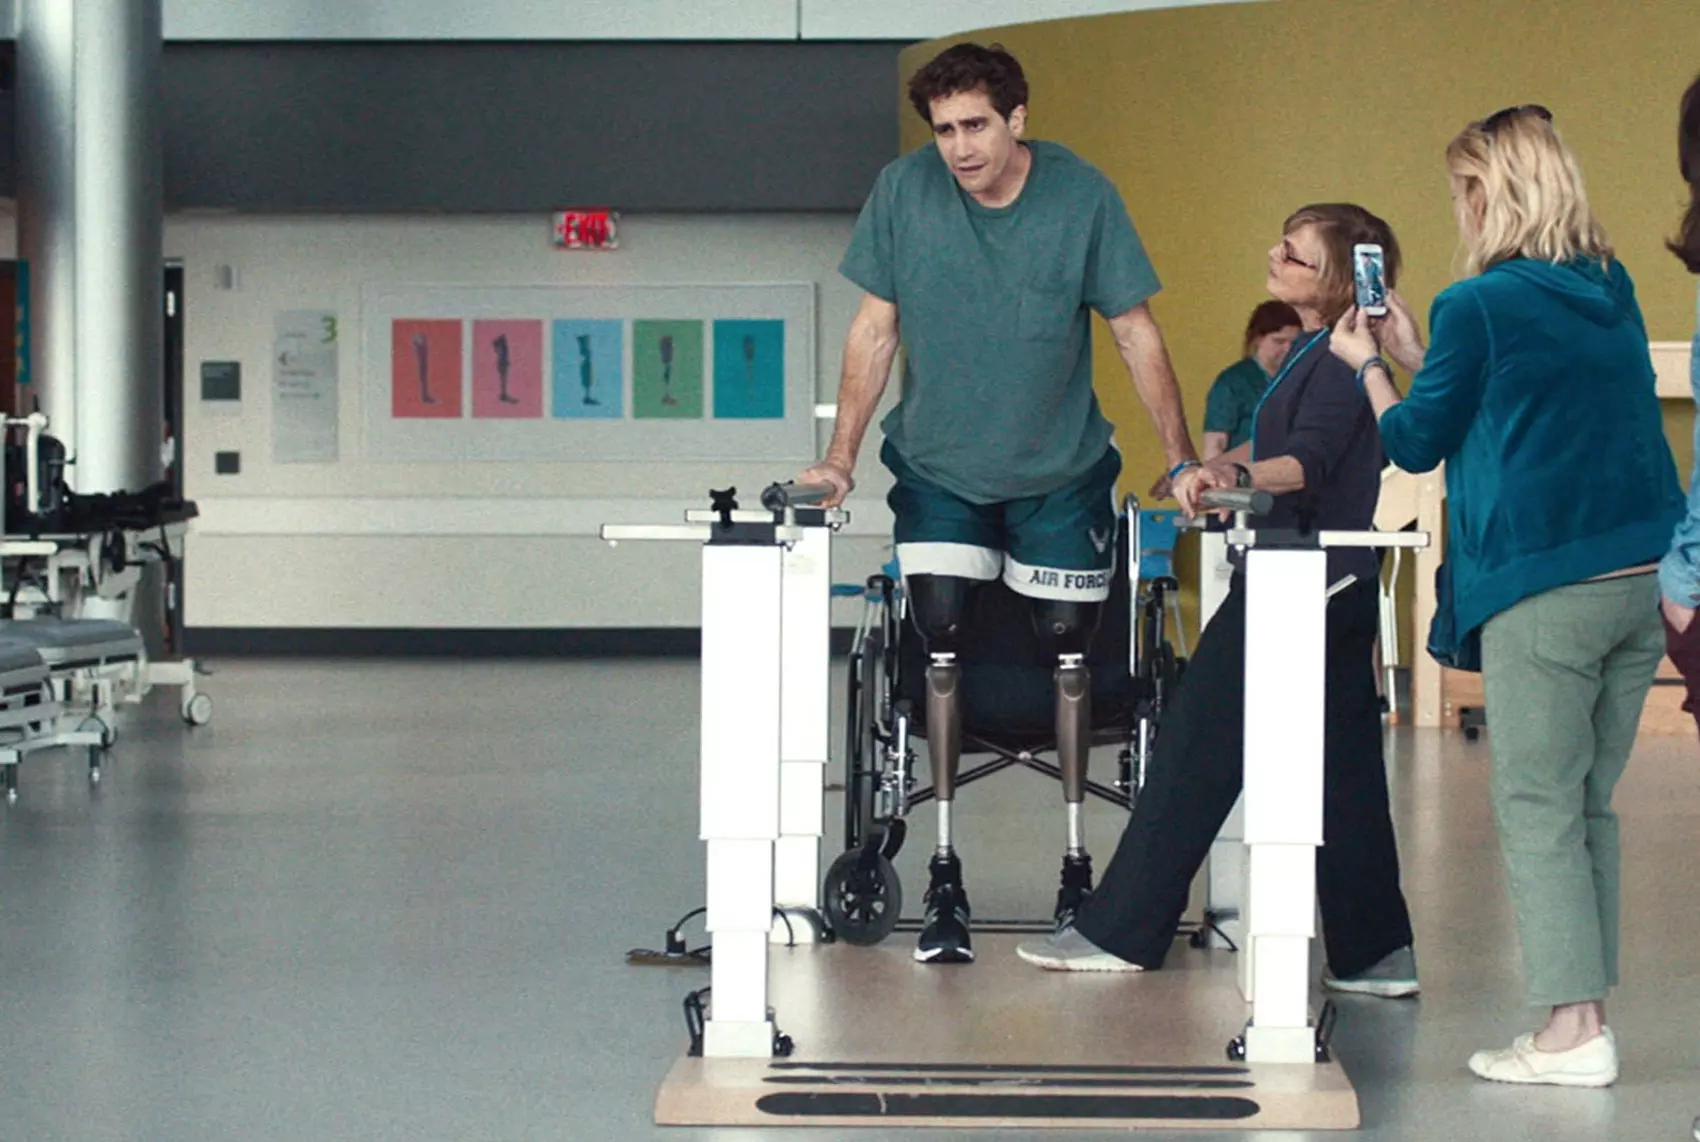 جیلنهال در نقش فردی که دو پایش را از دست داده درحال تلاش برای راه رفتن مجدد در مرکز درمانی